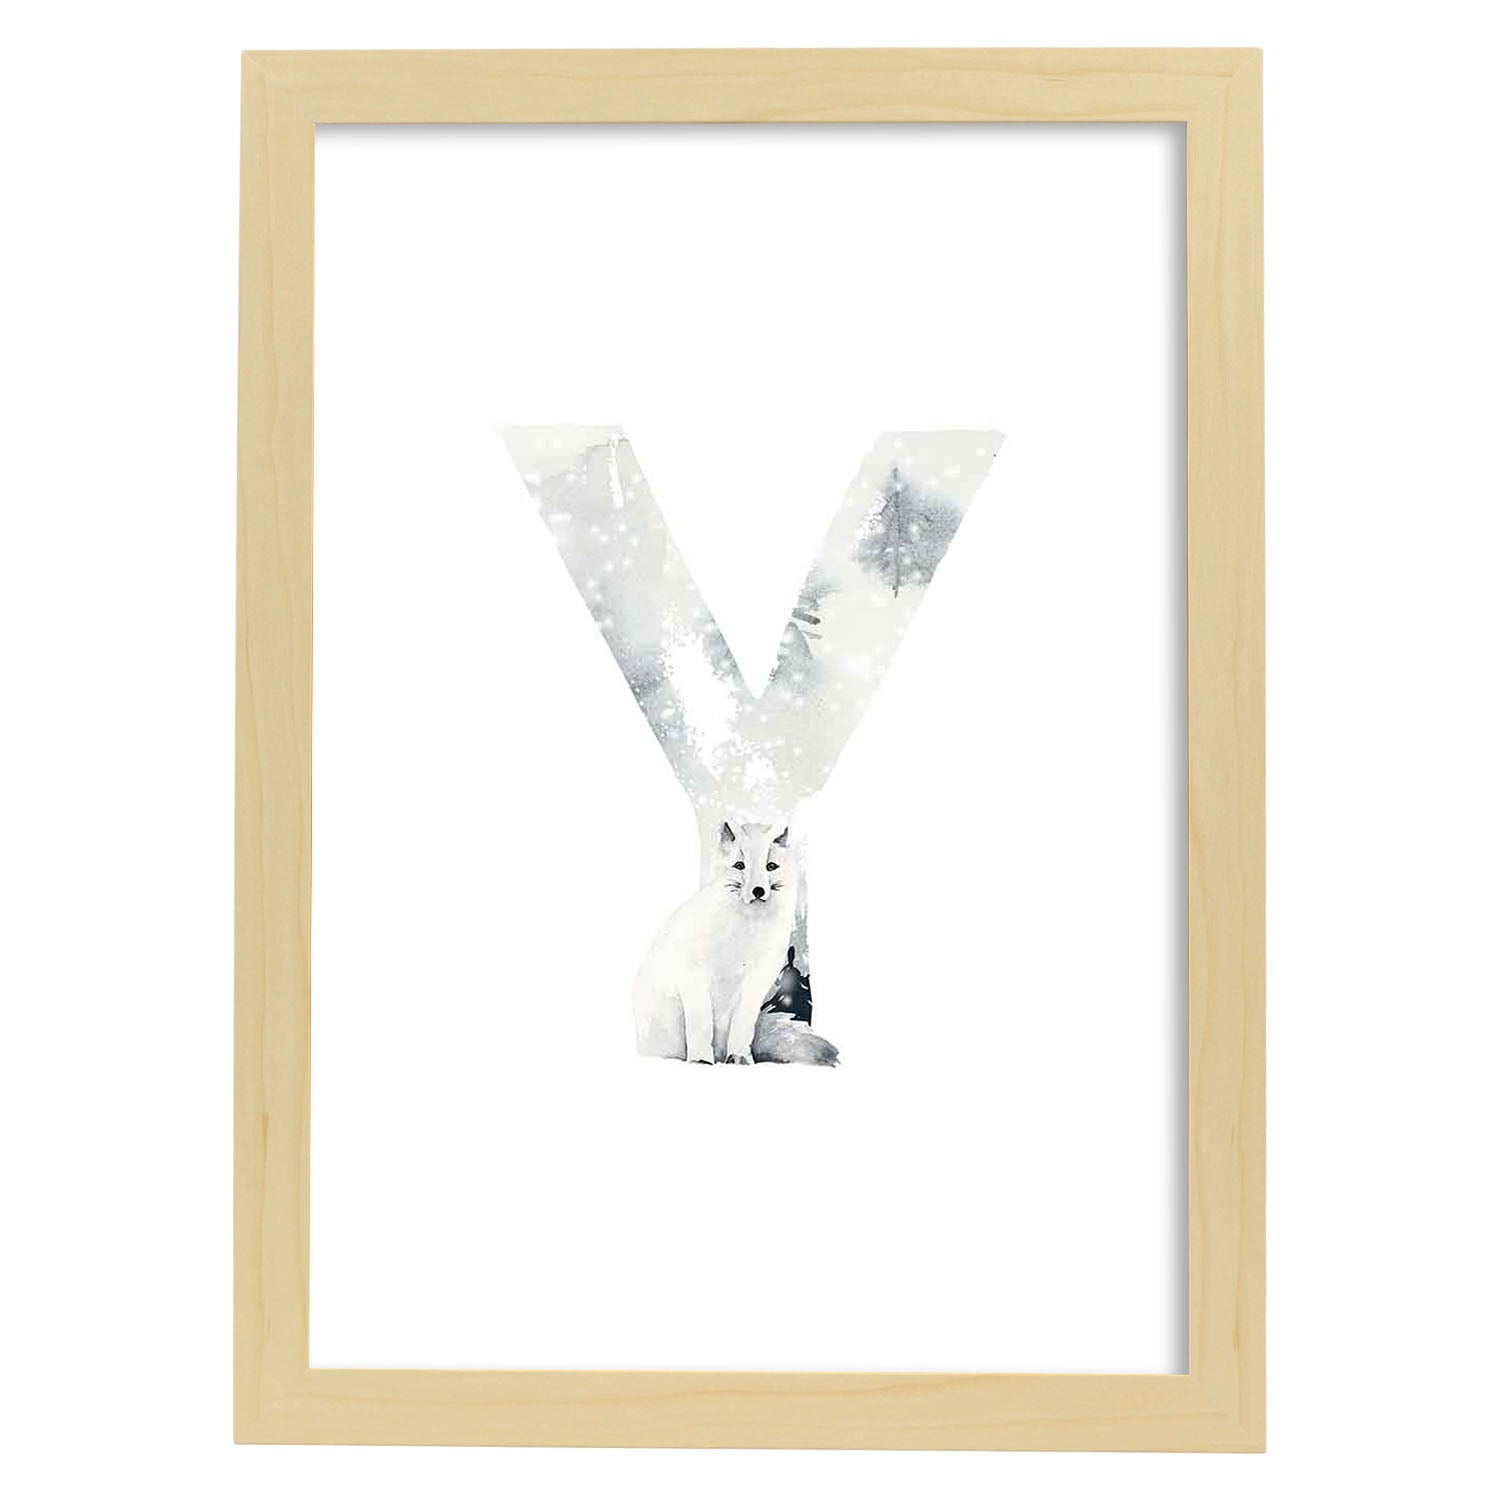 Poster de letra Y. Lámina estilo Invierno con imágenes del alfabeto.-Artwork-Nacnic-A4-Marco Madera clara-Nacnic Estudio SL